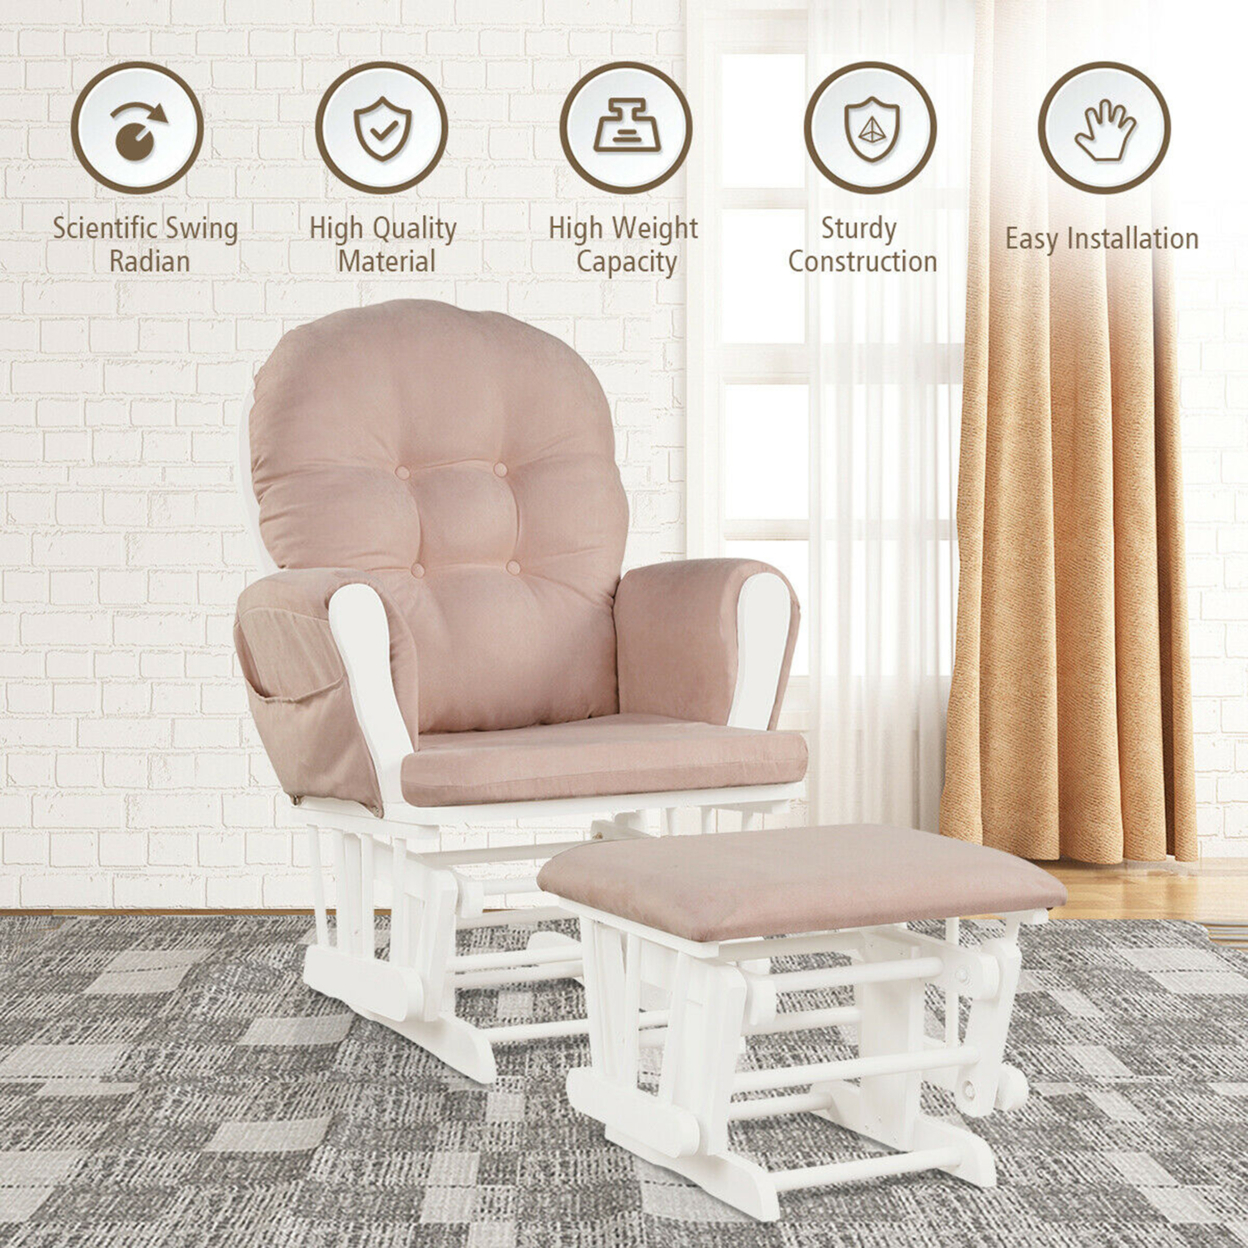 Baby Nursery Relax Rocker Rocking Chair Glider & Ottoman Set W/ Cushion - Beige